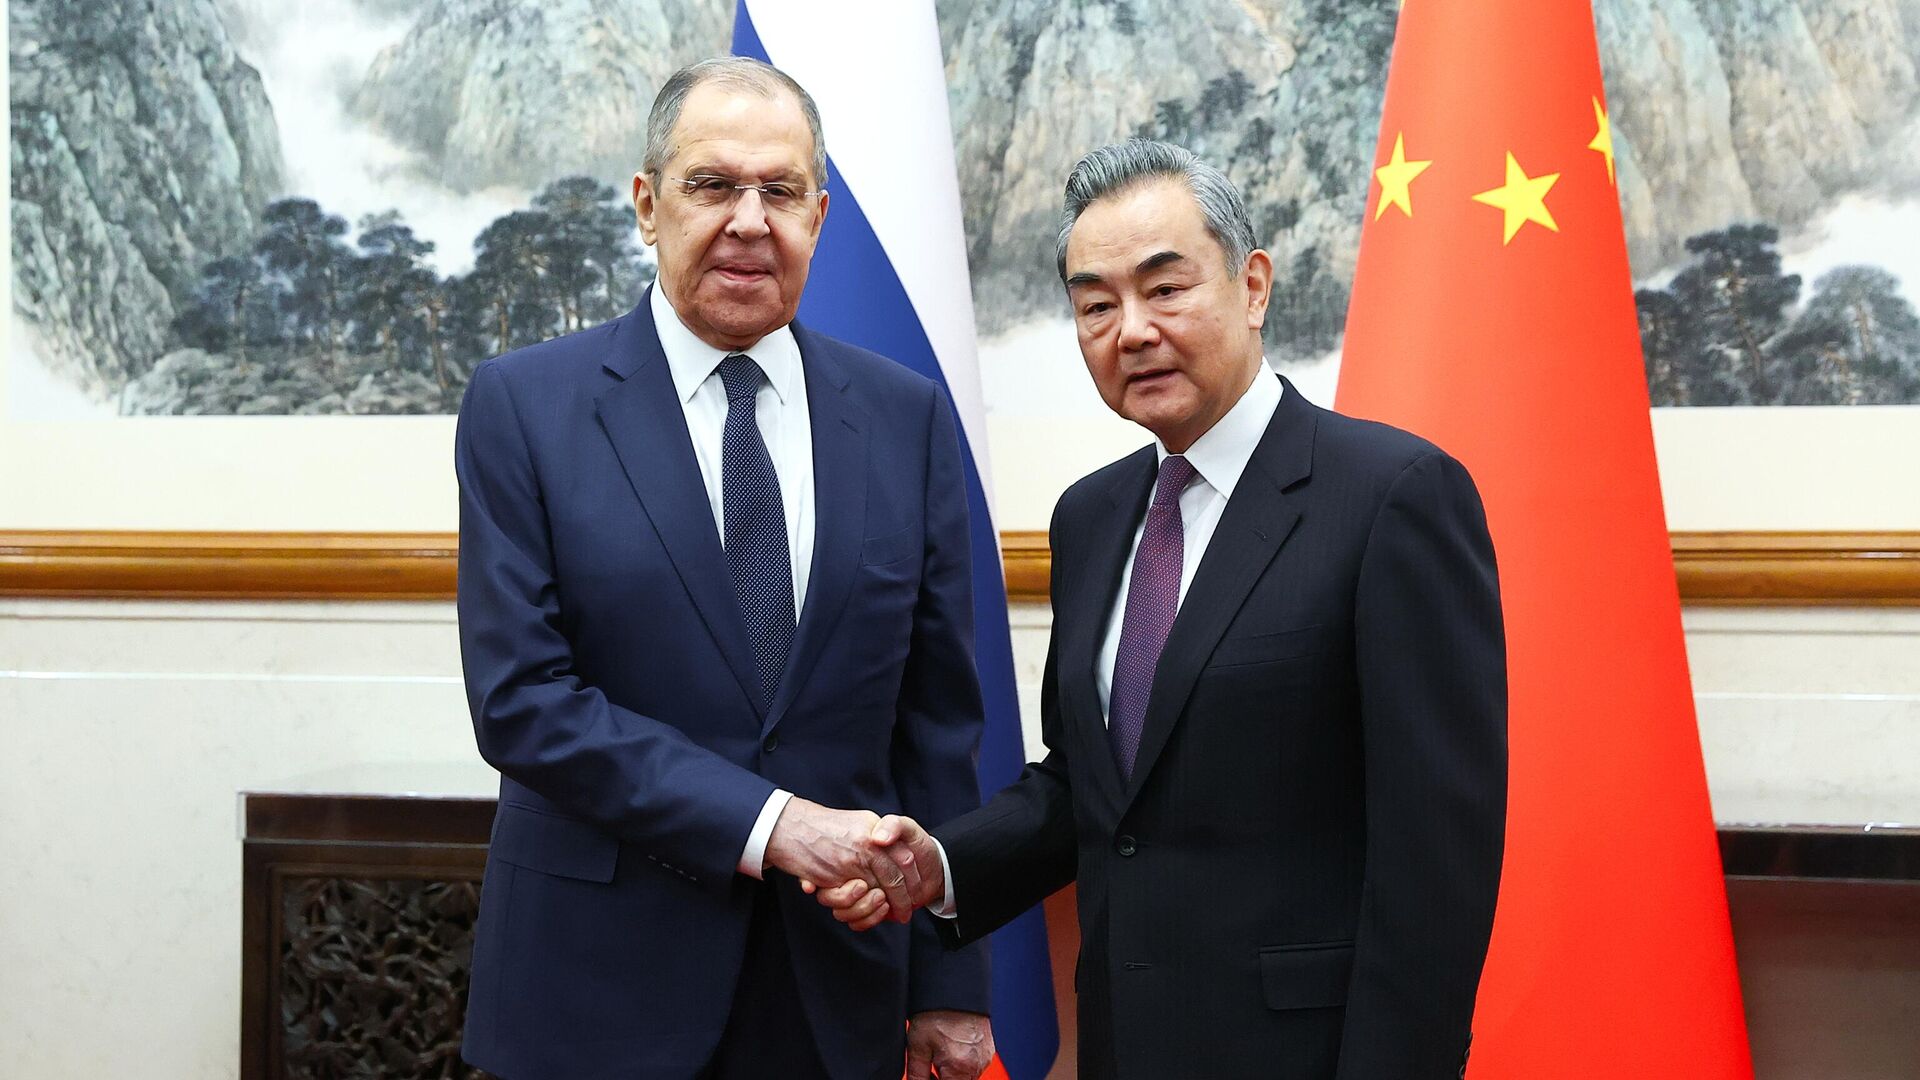 Ван И заявил, что отношения КНР и РФ стабильные, в них наблюдаются взаимодоверие - СМИ